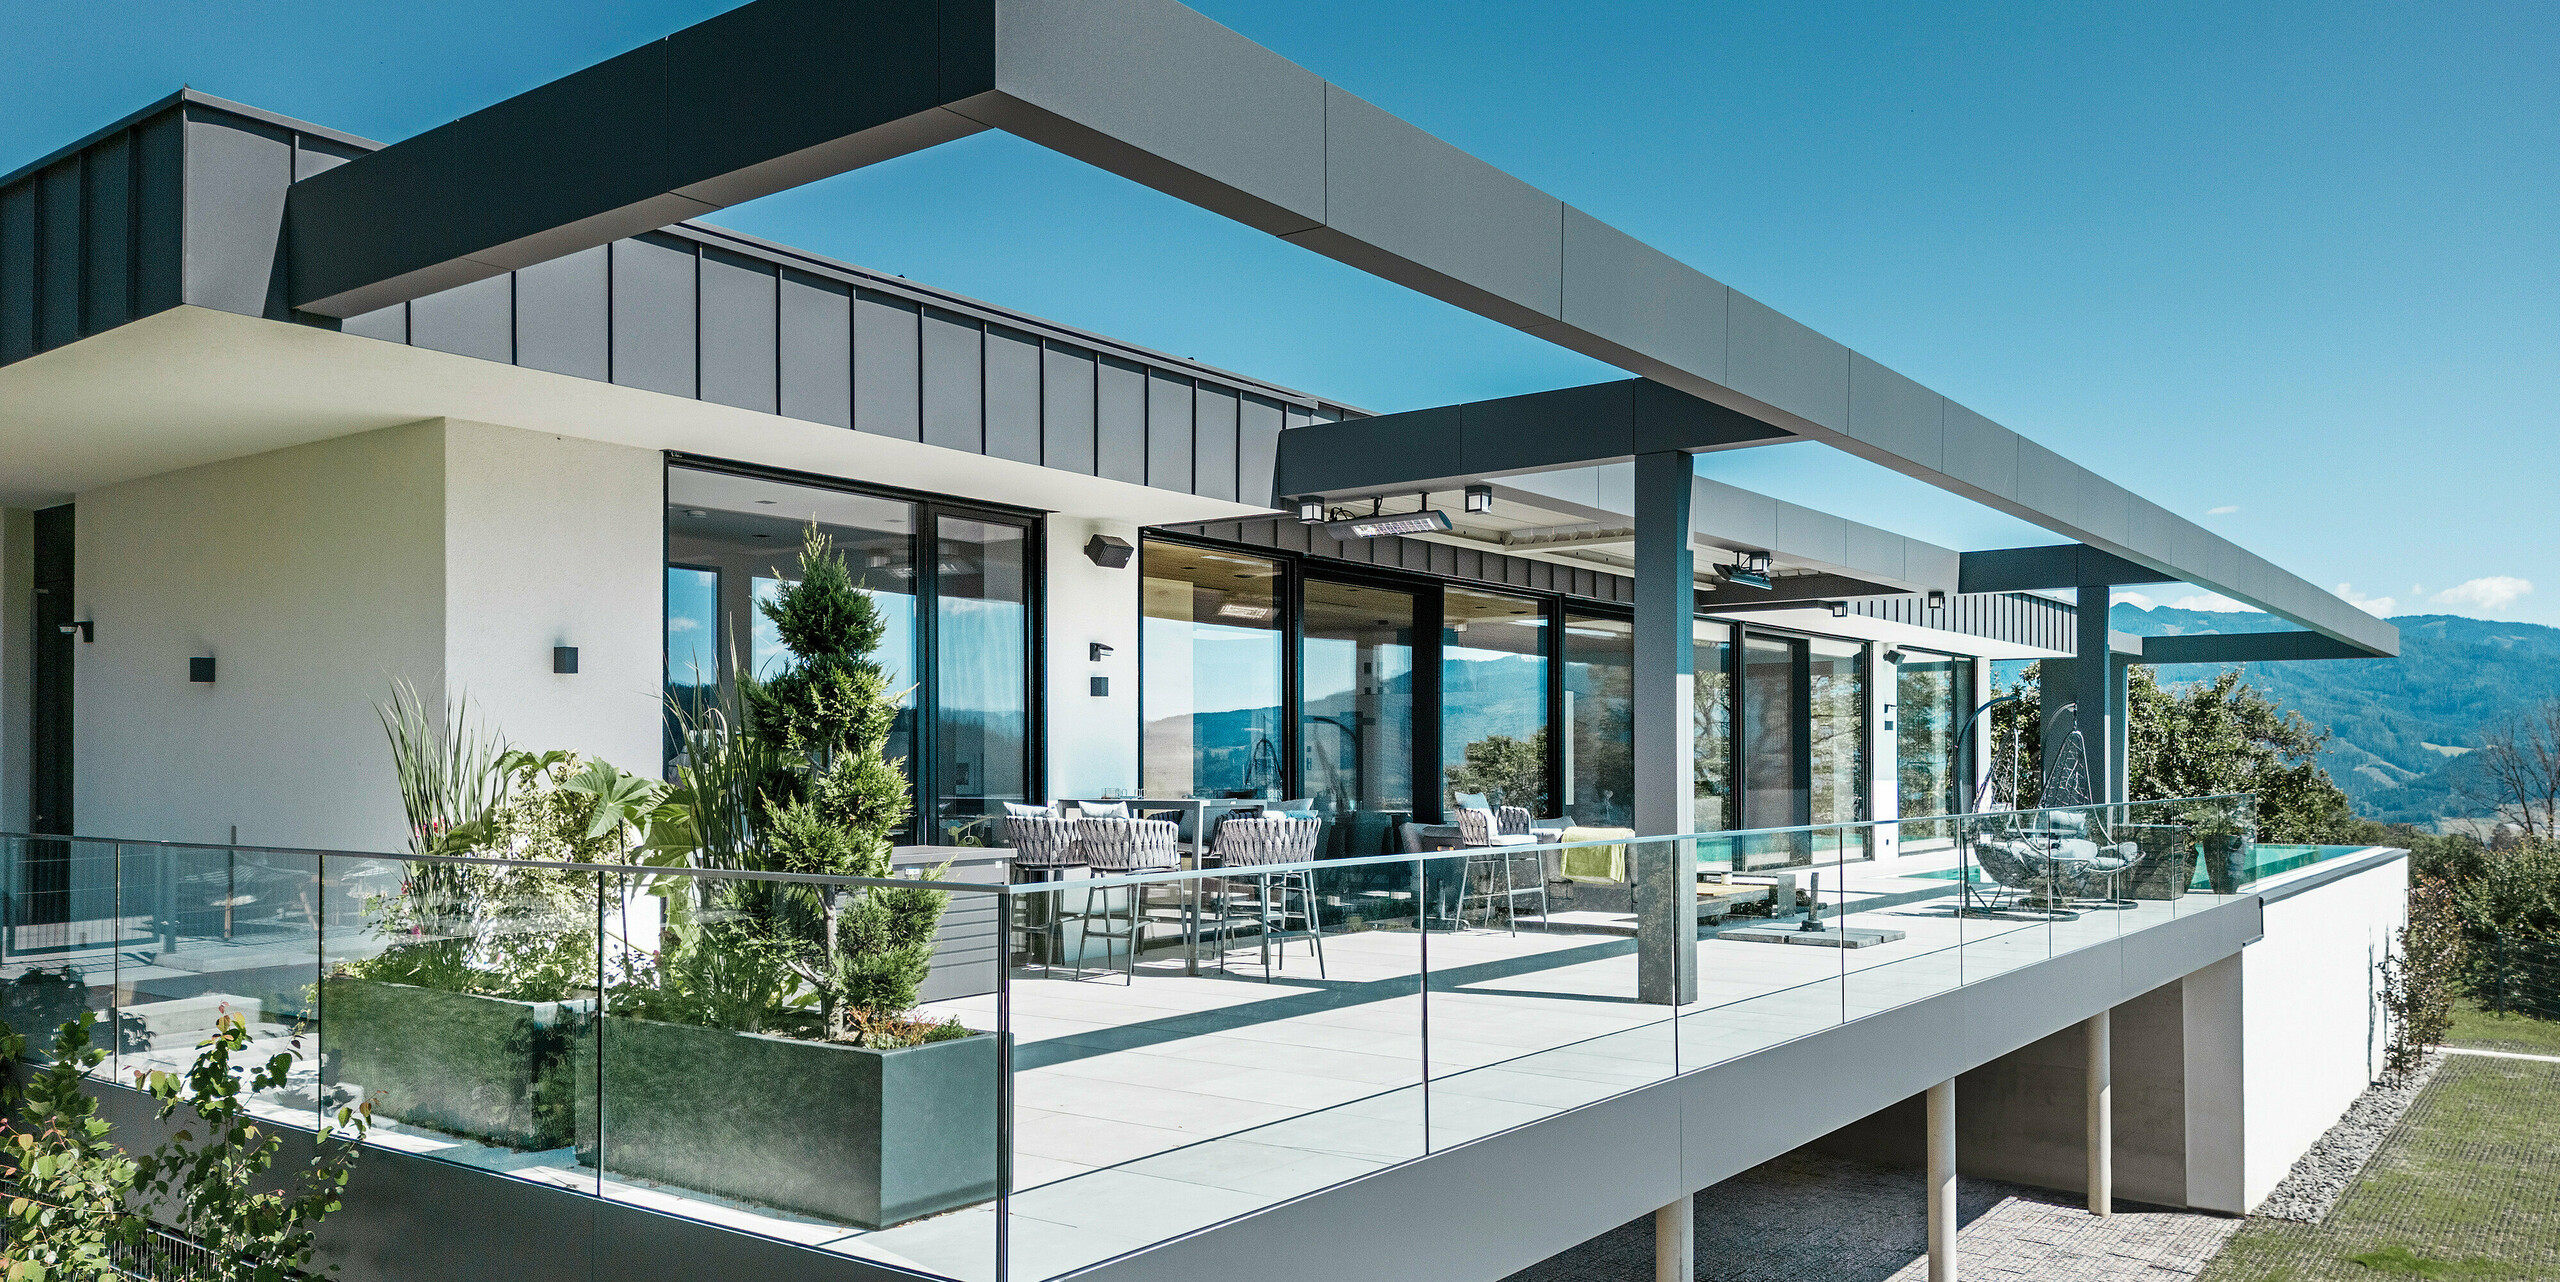 Luxusní terasa rodinného domu v rakouském Pogier s elegantním střešním a fasádním systémem od PREFA. Kombinace PREFALZ a PREFABOND v tmavě šedé barvě vytváří moderní a sofistikovaný design. Prostorná terasa nabízí dechberoucí výhled a je vybavena skleněným zábradlím, které vytváří otevřenou a příjemnou atmosféru. Částečně zastřešený venkovní prostor umožňuje vychutnat si krásy okolní přírody a je ideální pro relaxaci a společenská setkání.